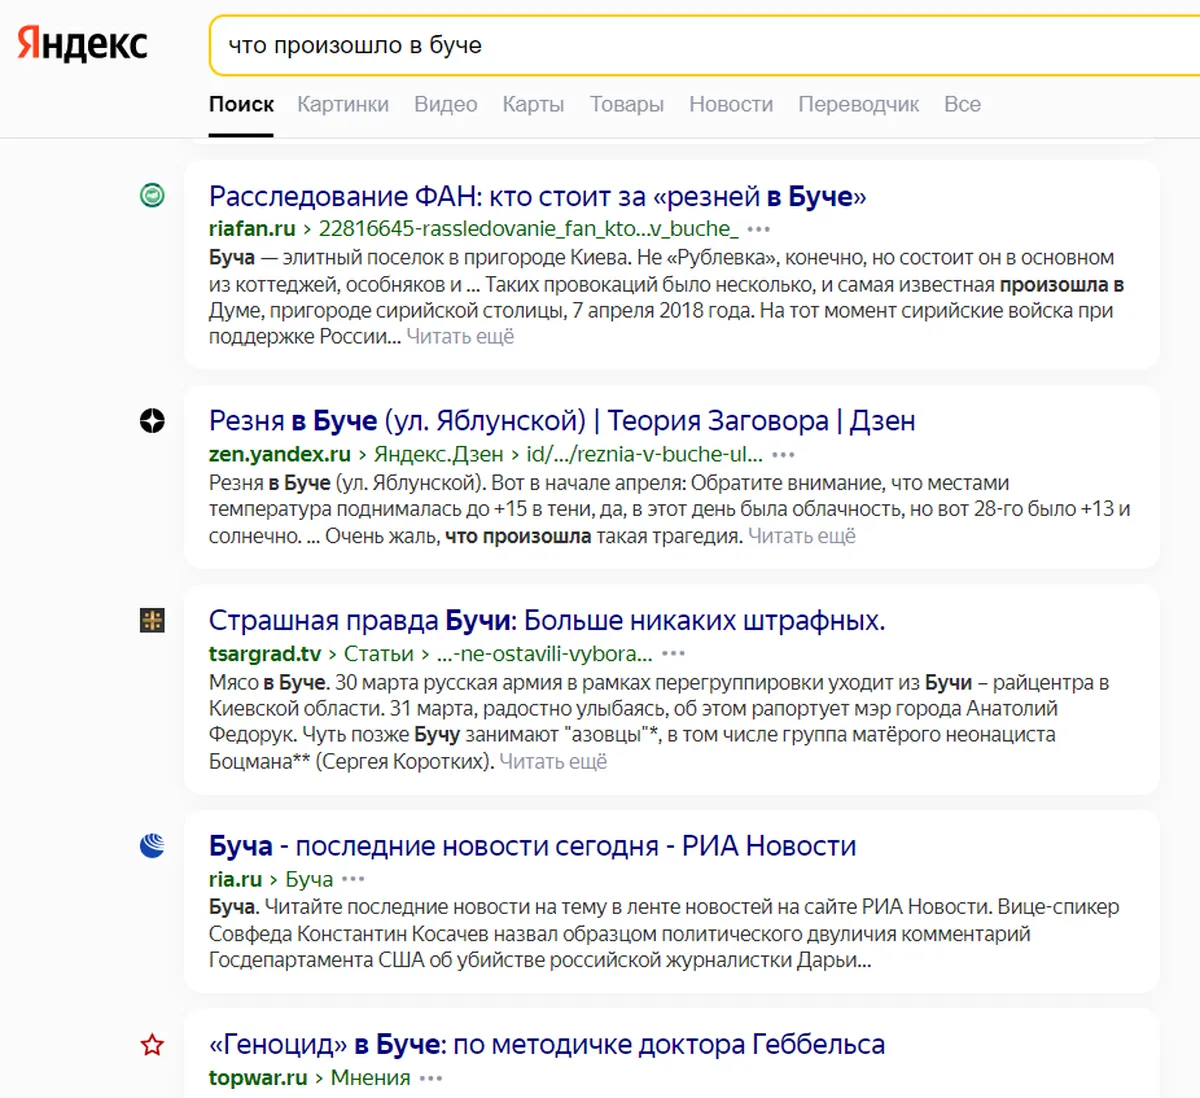 В выдаче «Яндекса» больше материалов,  «разоблачающих фейки» 